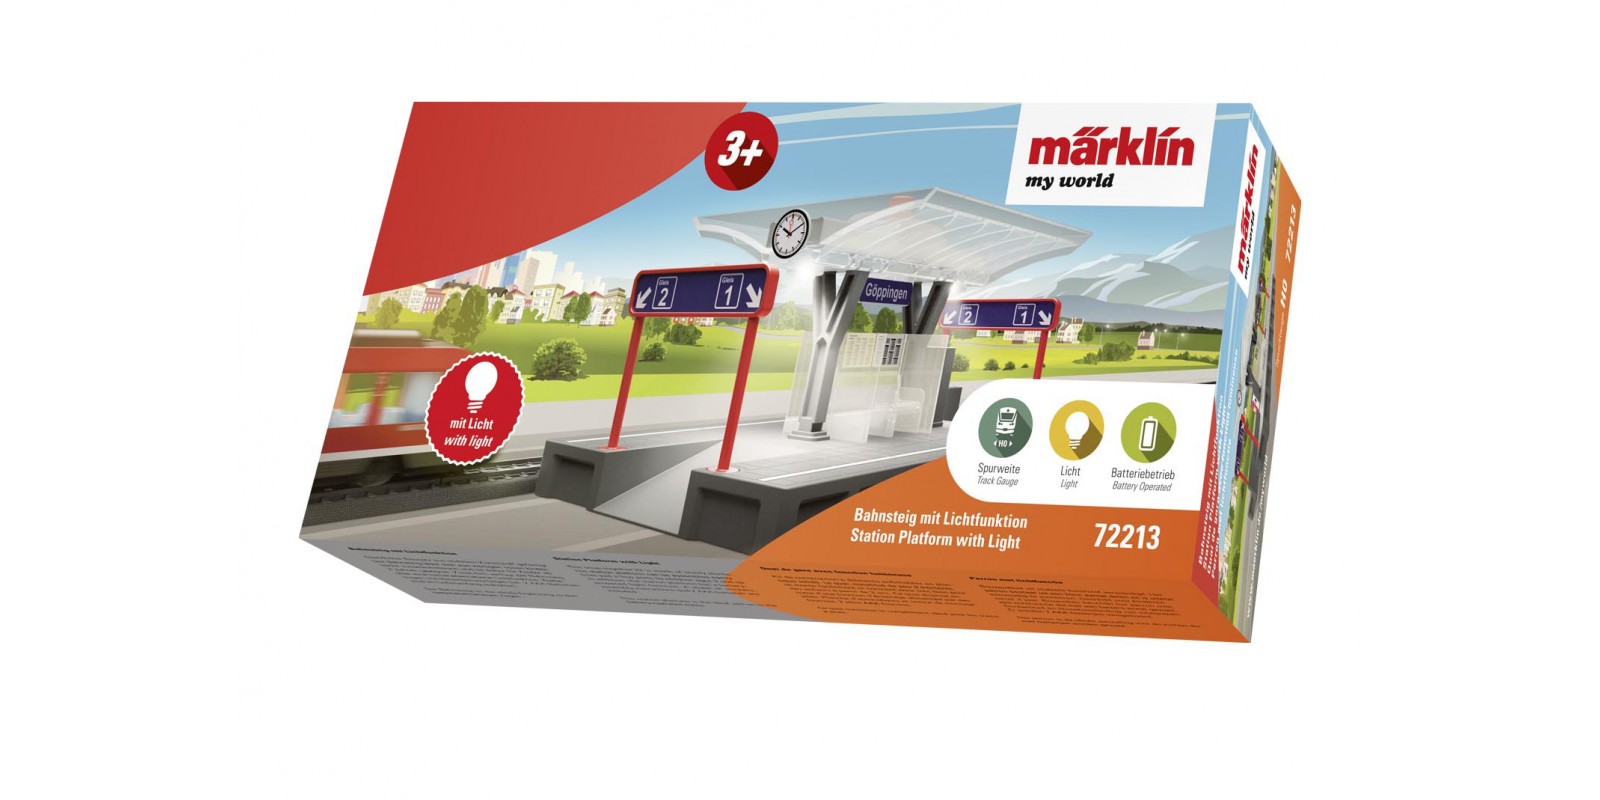 72213 Märklin my world – Station Platform with Light